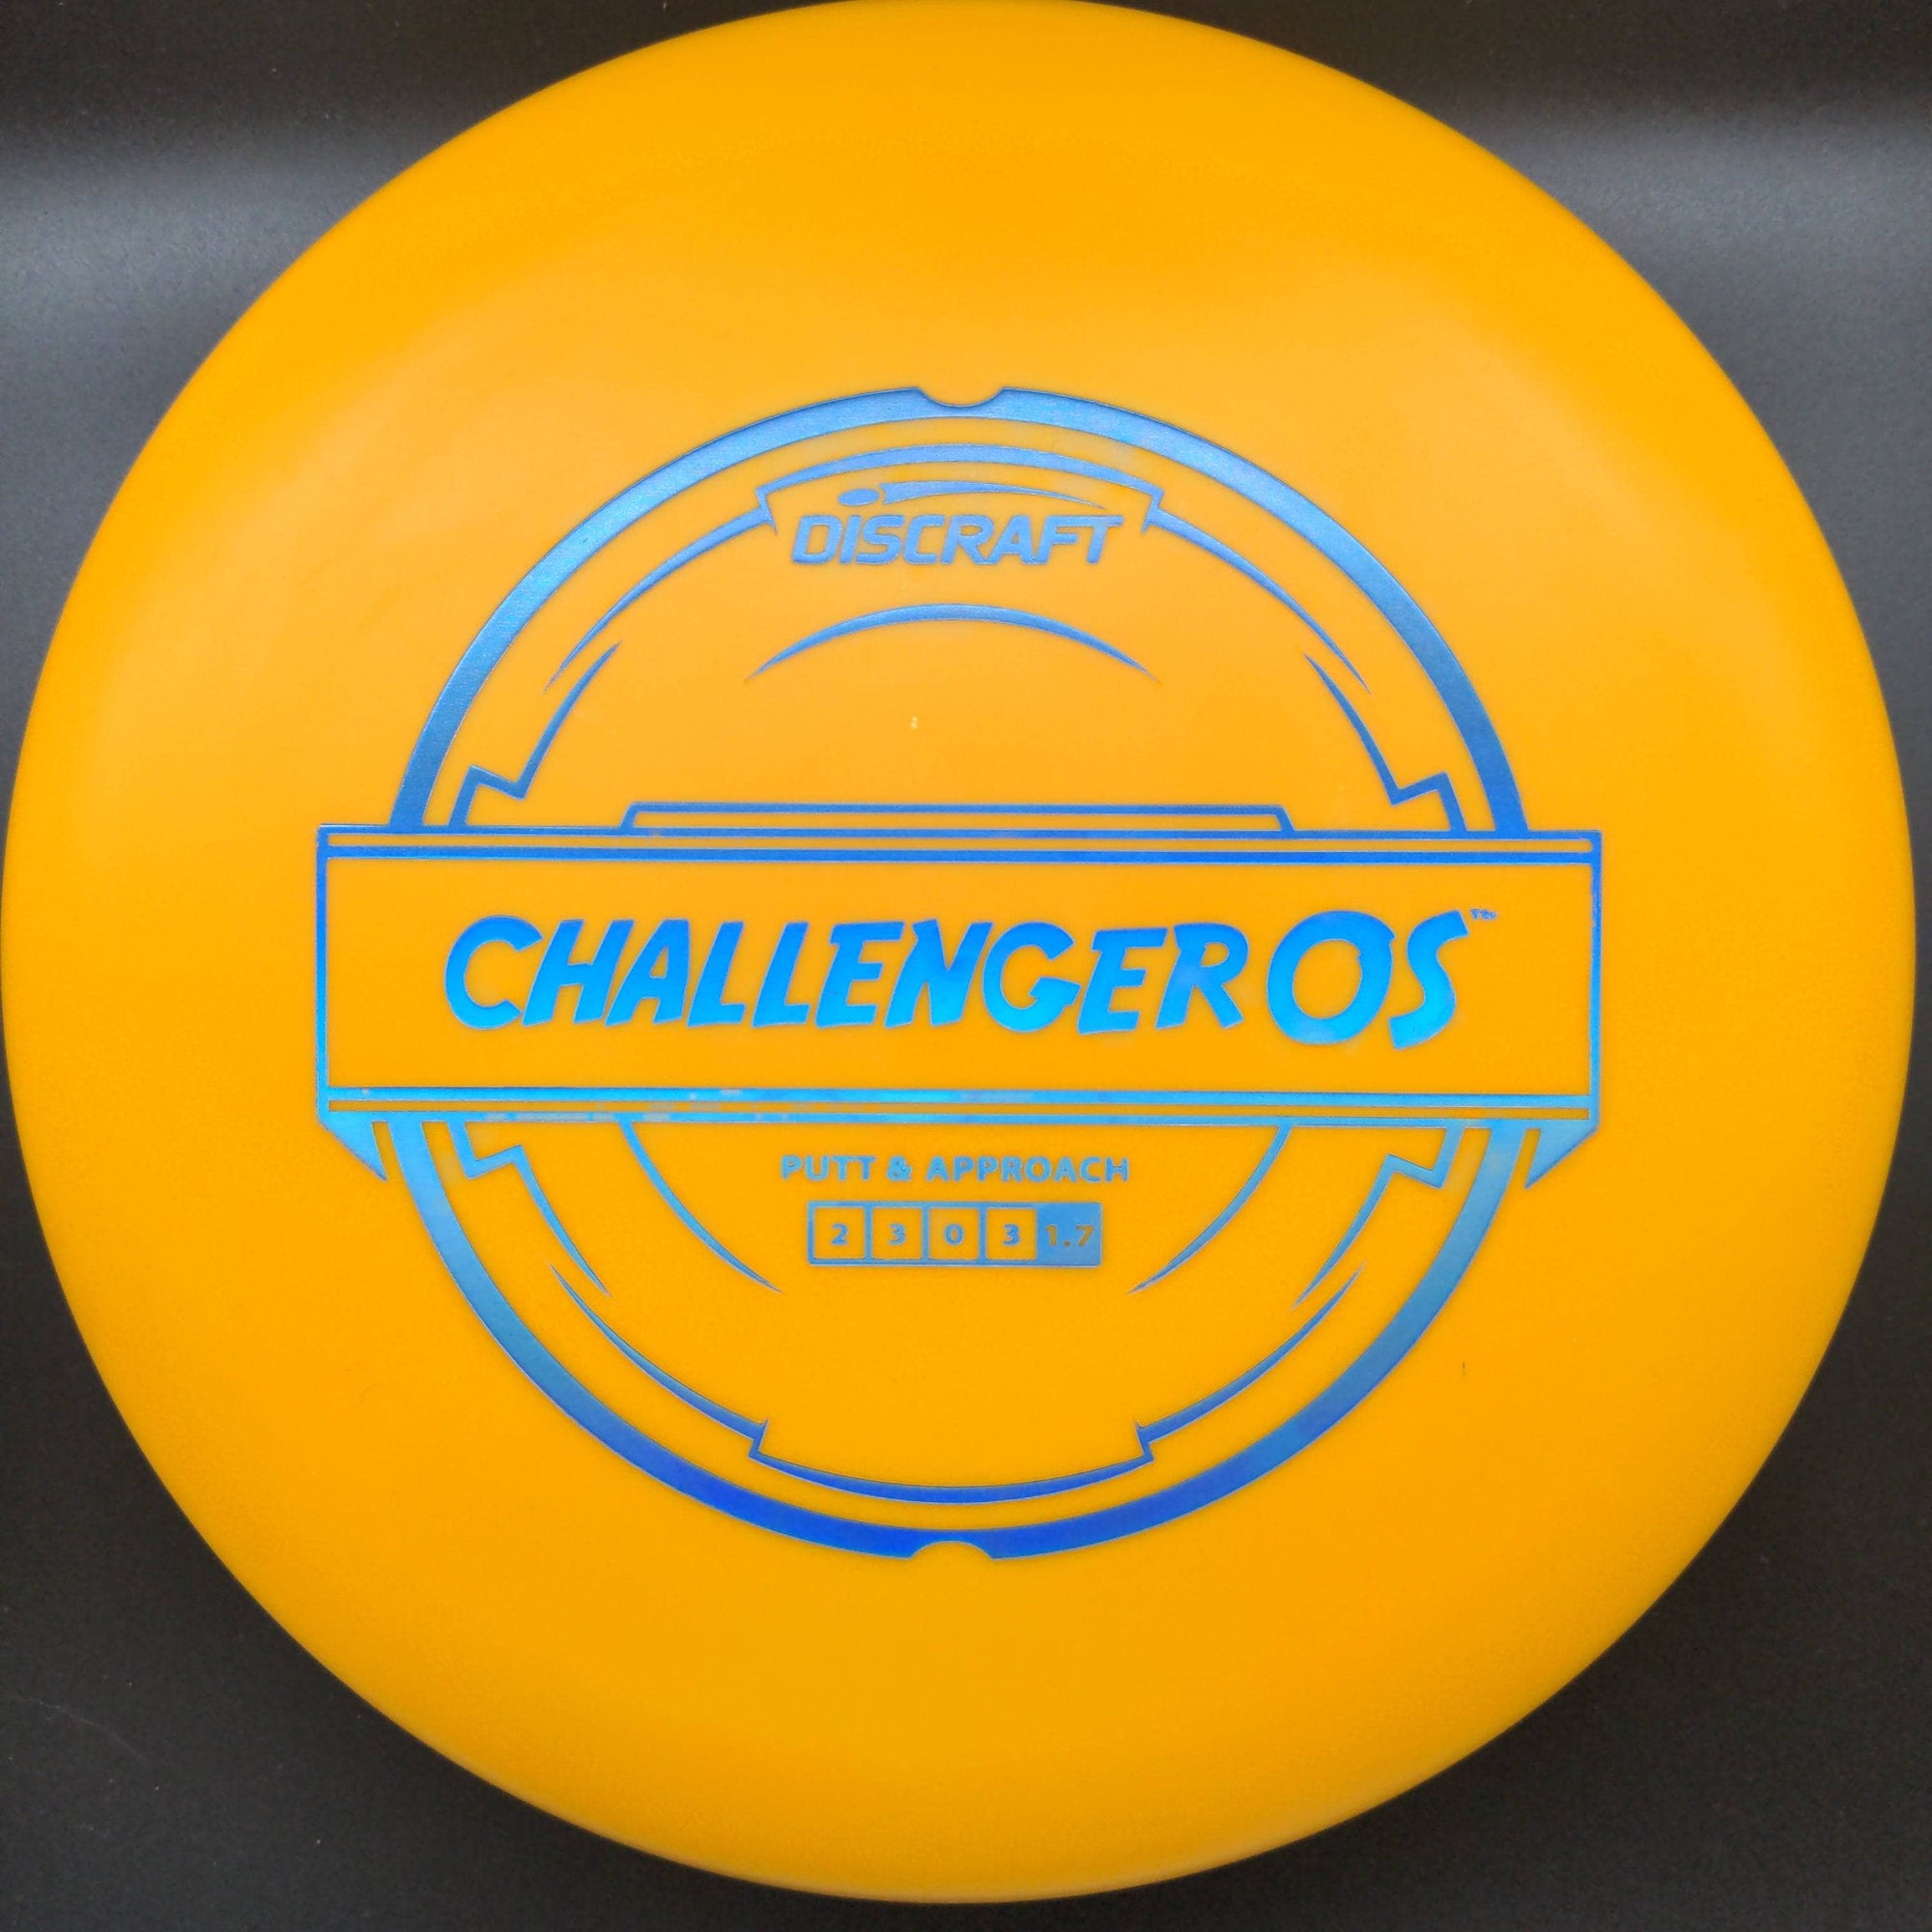 Discraft Putter Orange Blue Holo Stamp 174g Challenger OS, Putter Line